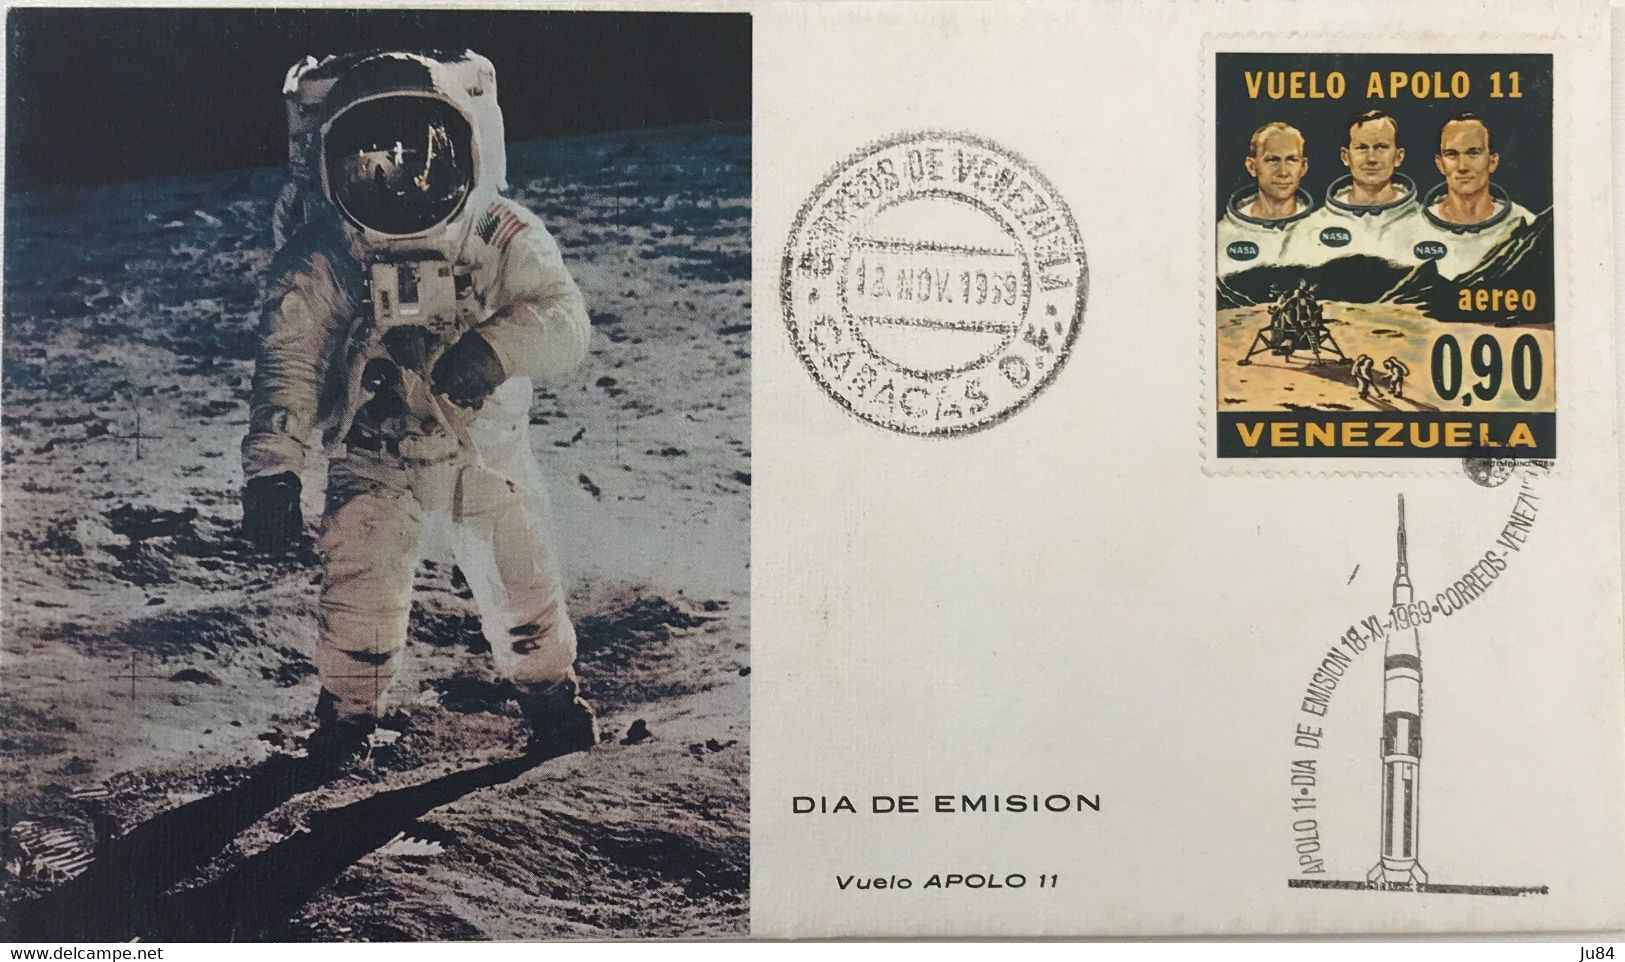 Venezuela - Caracas - FDC - Vuelo Apolo 11 - Astronautes - Apollon 11 - 13 Novembre 1969 - Venezuela